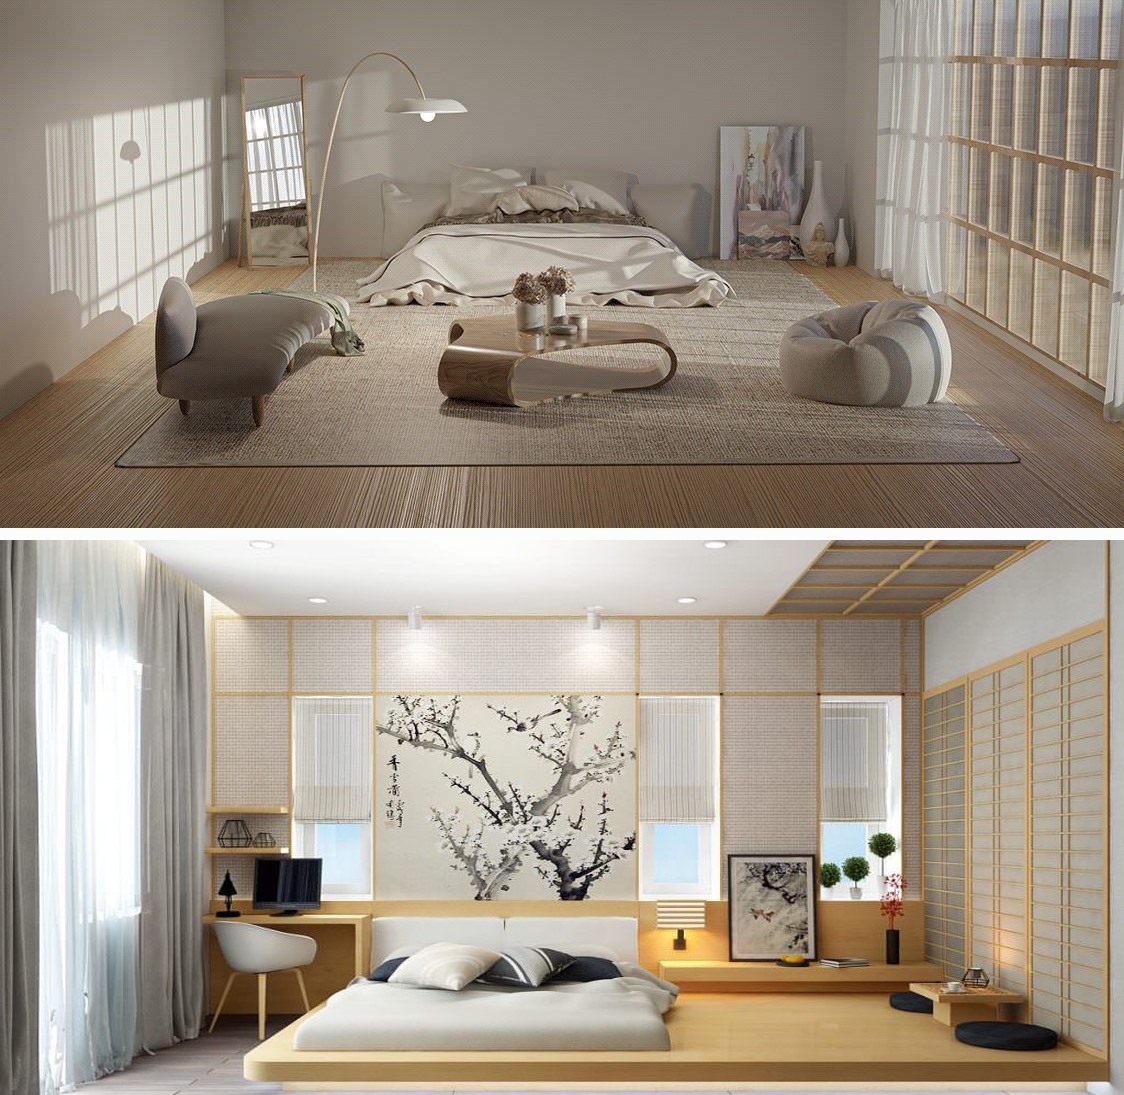 Phòng ngủ kiểu Nhật: Phong cách này hạn chế sử dụng quá nhiều đồ nội thất, chỉ bố trí những món đồ cơ bản và kiểu dáng thấp. Phòng ngủ kiểu Nhật mang đến sự nhẹ nhàng và thoải mái, tạo sự thoáng đãng. Đồ họa: Khương Duy